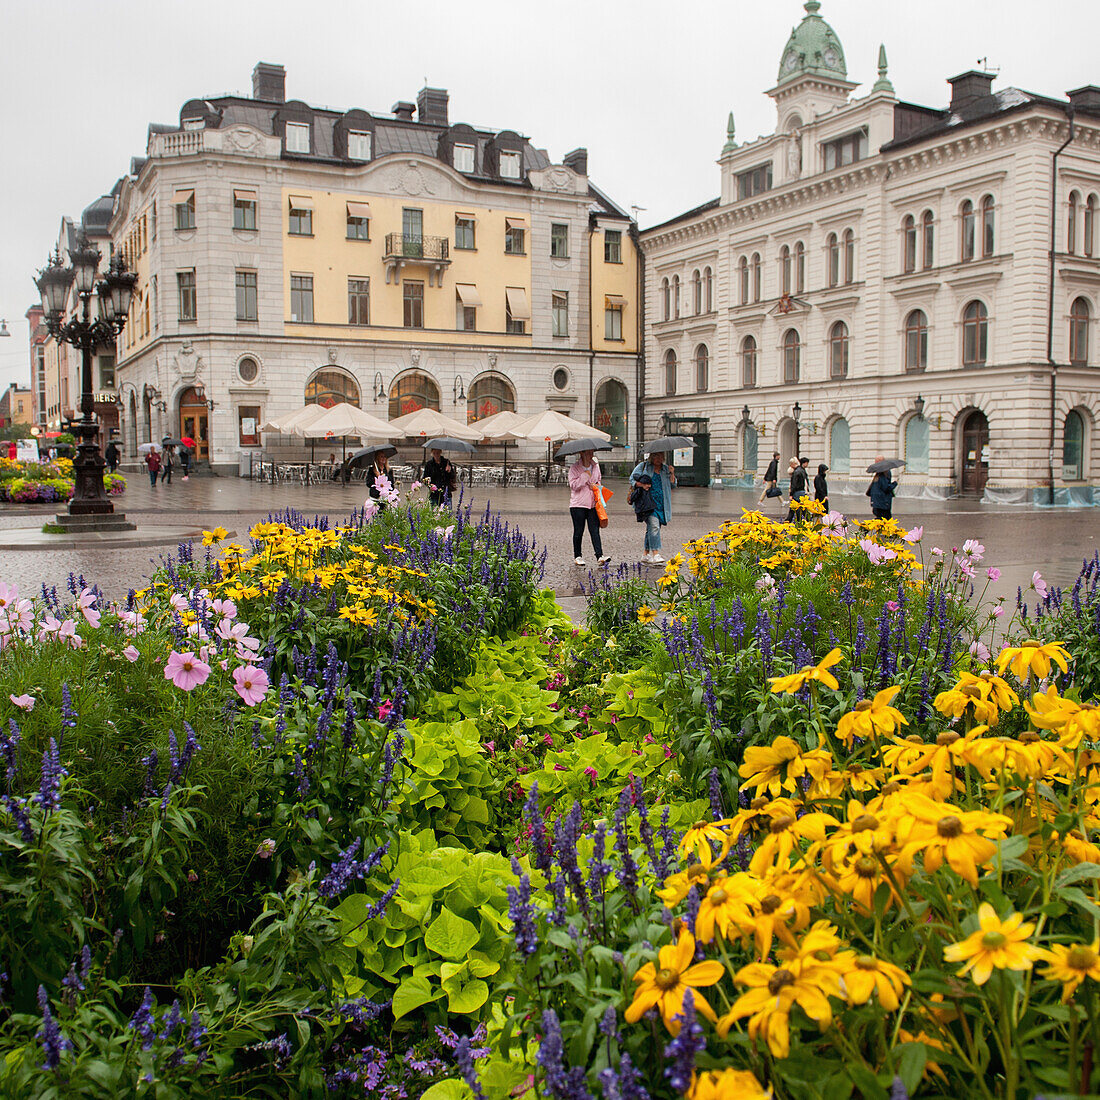 Fußgänger und farbenfrohe Blumen in einer städtischen Umgebung; Uppsala Schweden